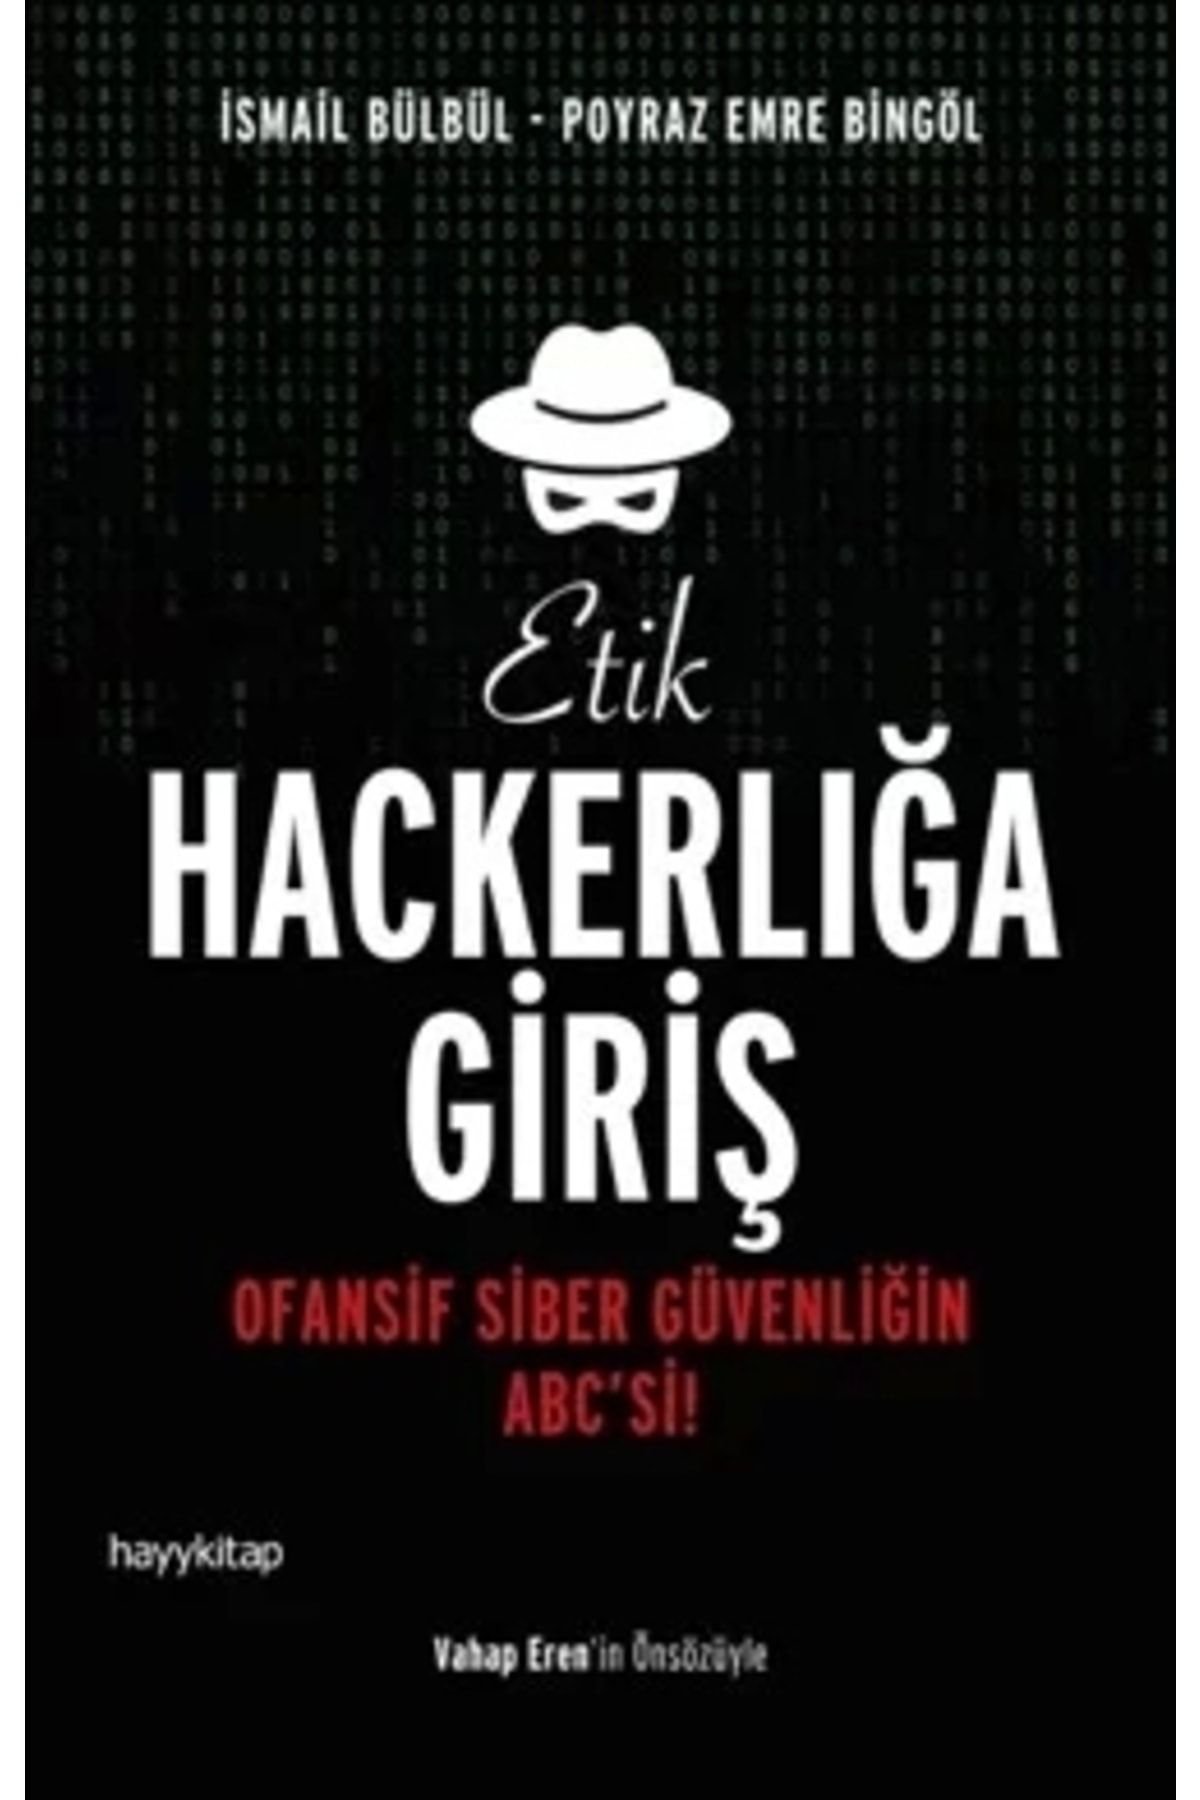 Hayykitap Etik Hackerlığa Giriş & Ofansif Siber Güvenliğin Abc'si!